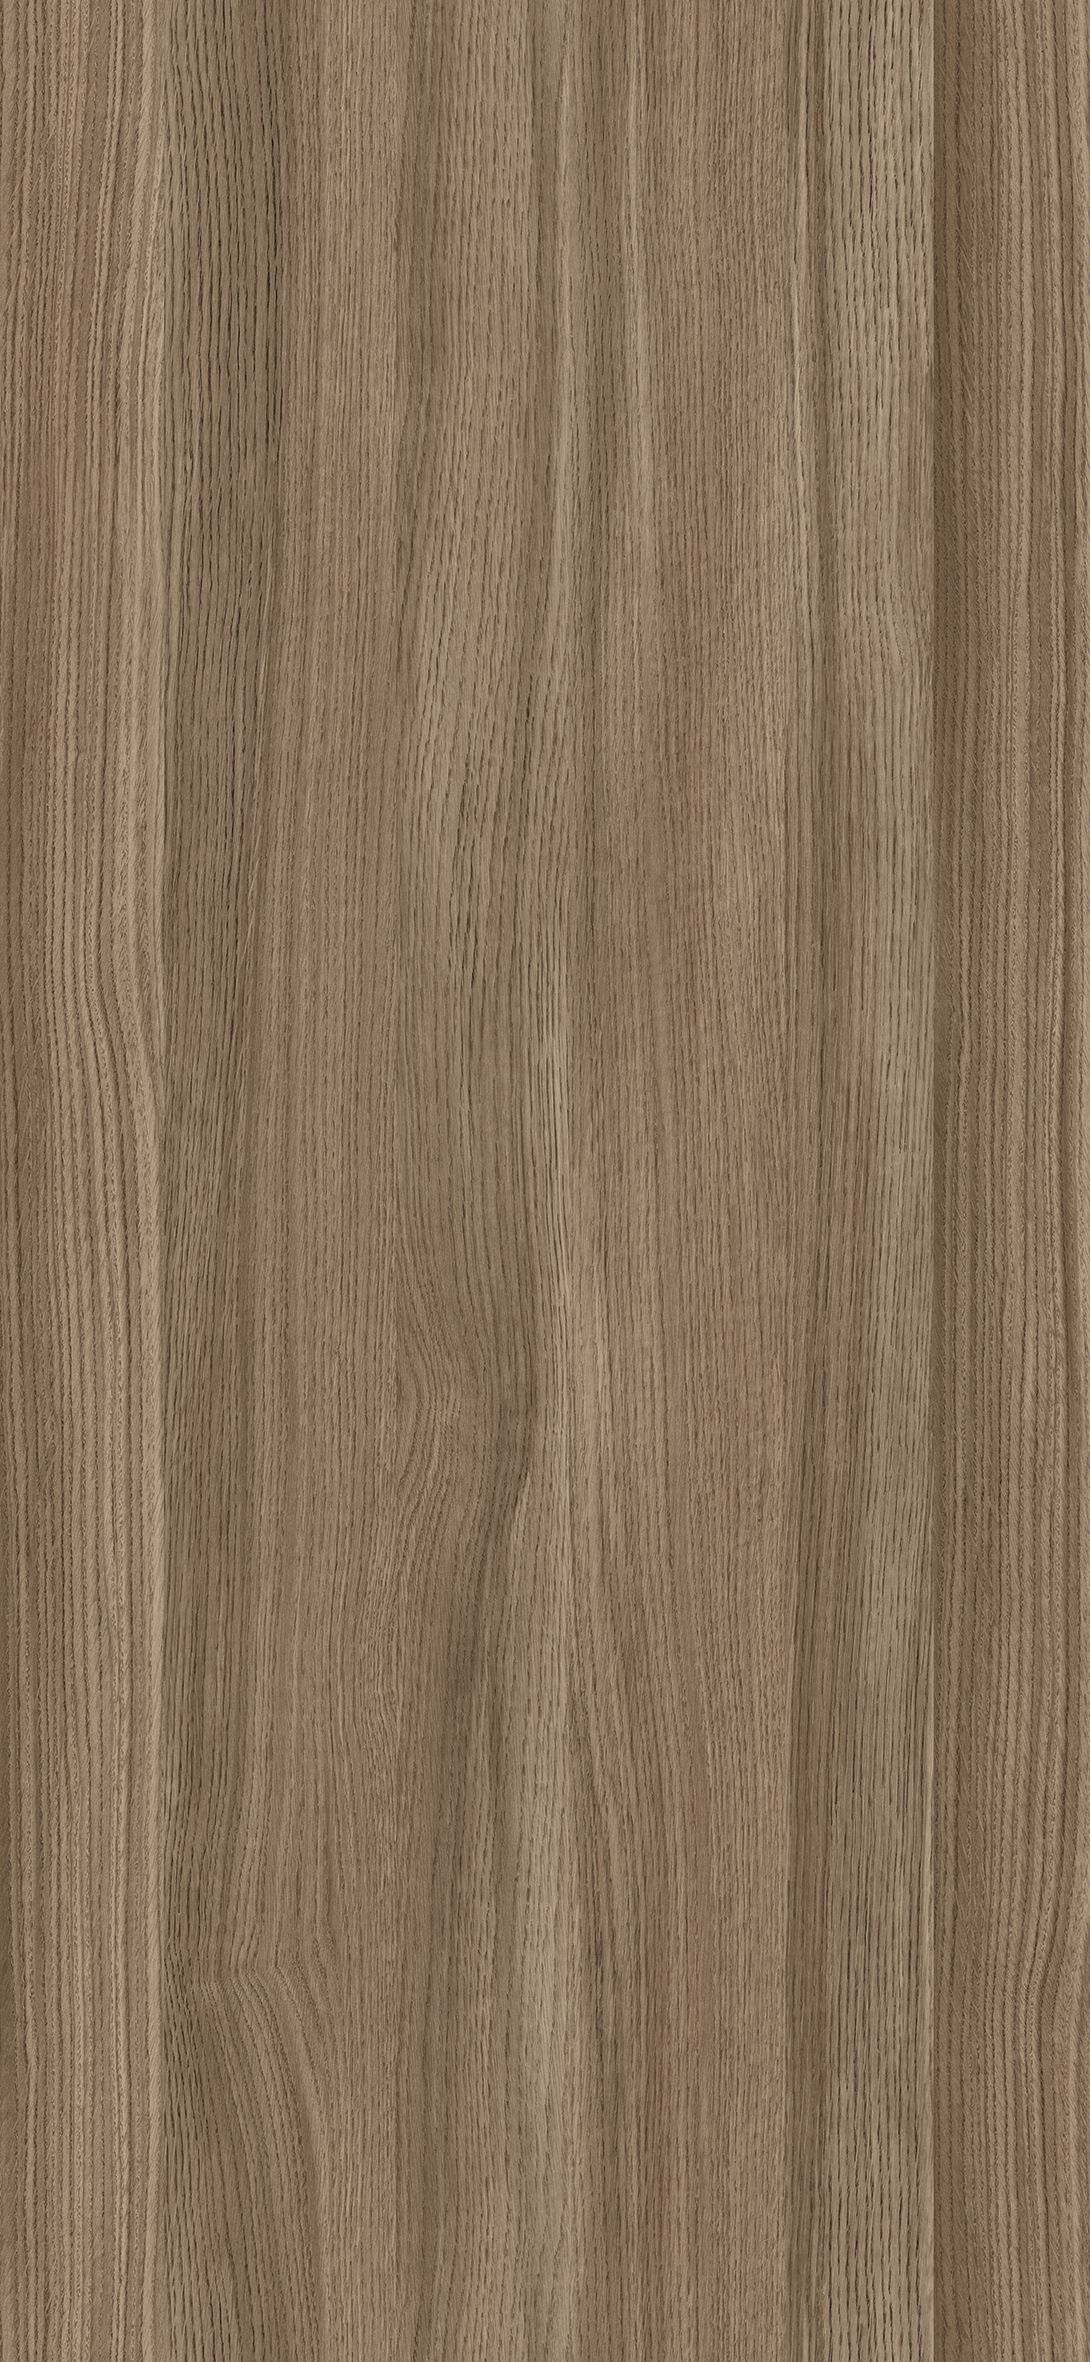 M6285 Timeless Oak Cocoa